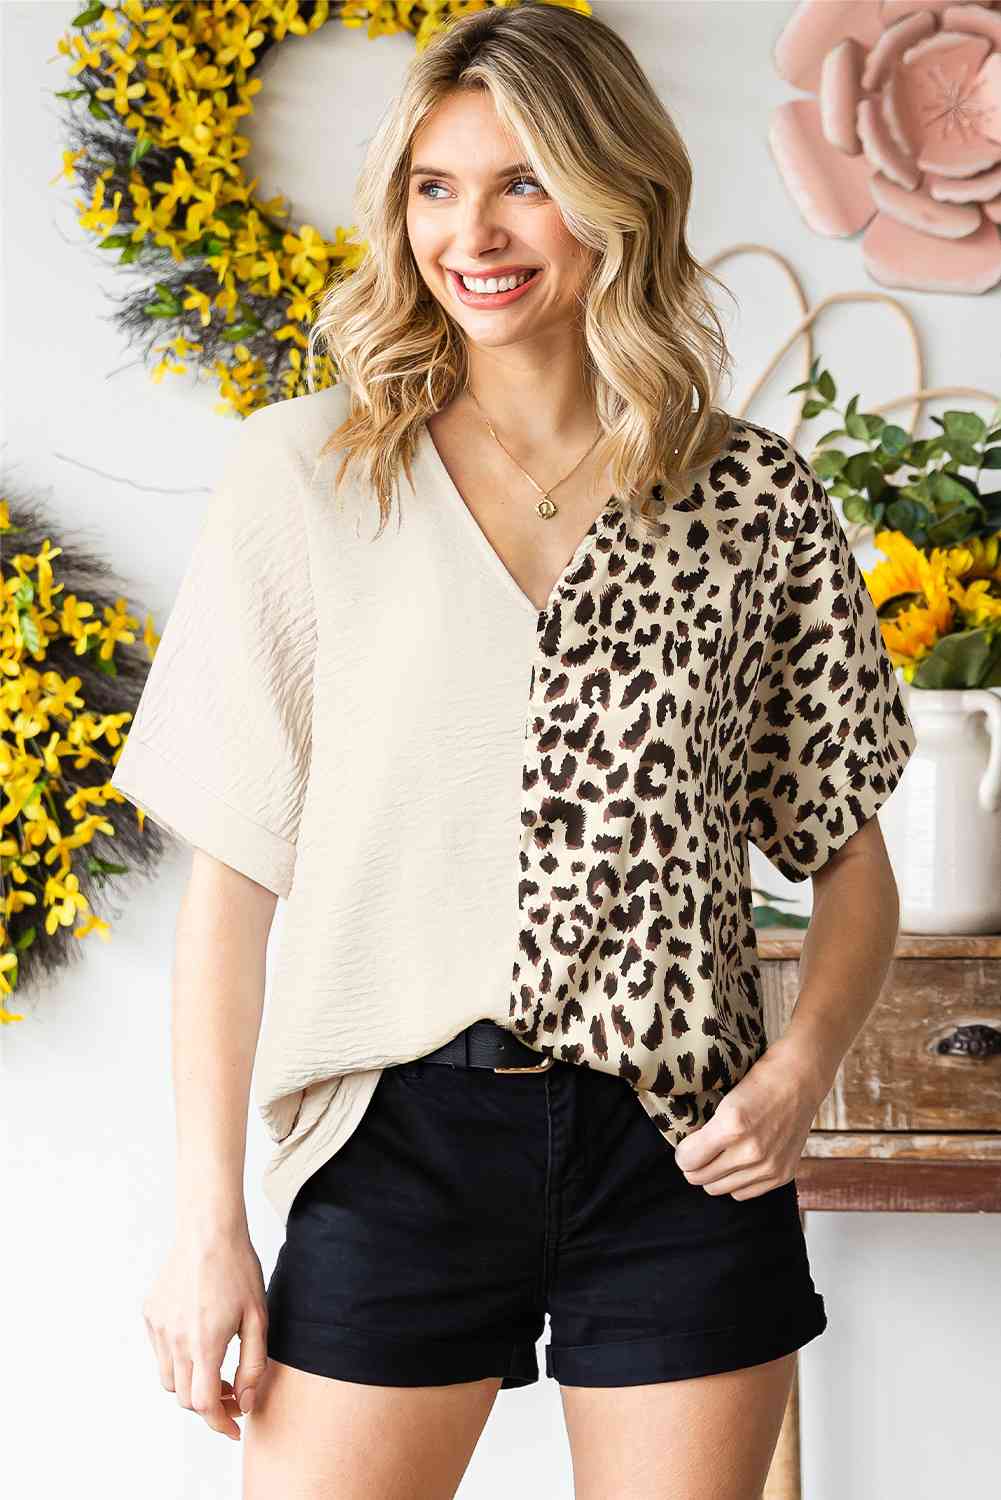 Leopard Print Color Block V-Neck Blouse (2 Colors) Shirts & Tops Krazy Heart Designs Boutique   